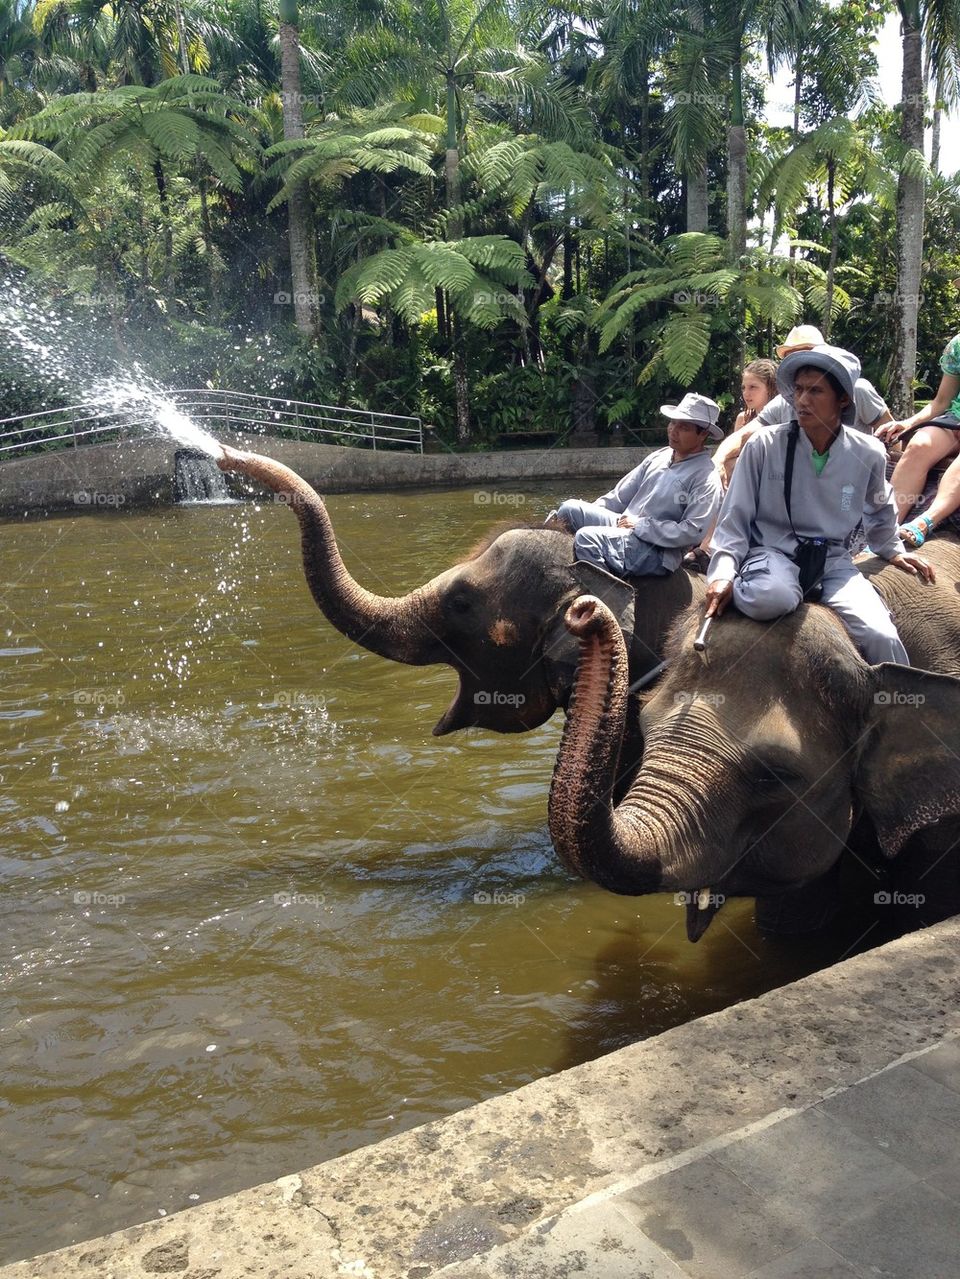 Bali elephants 